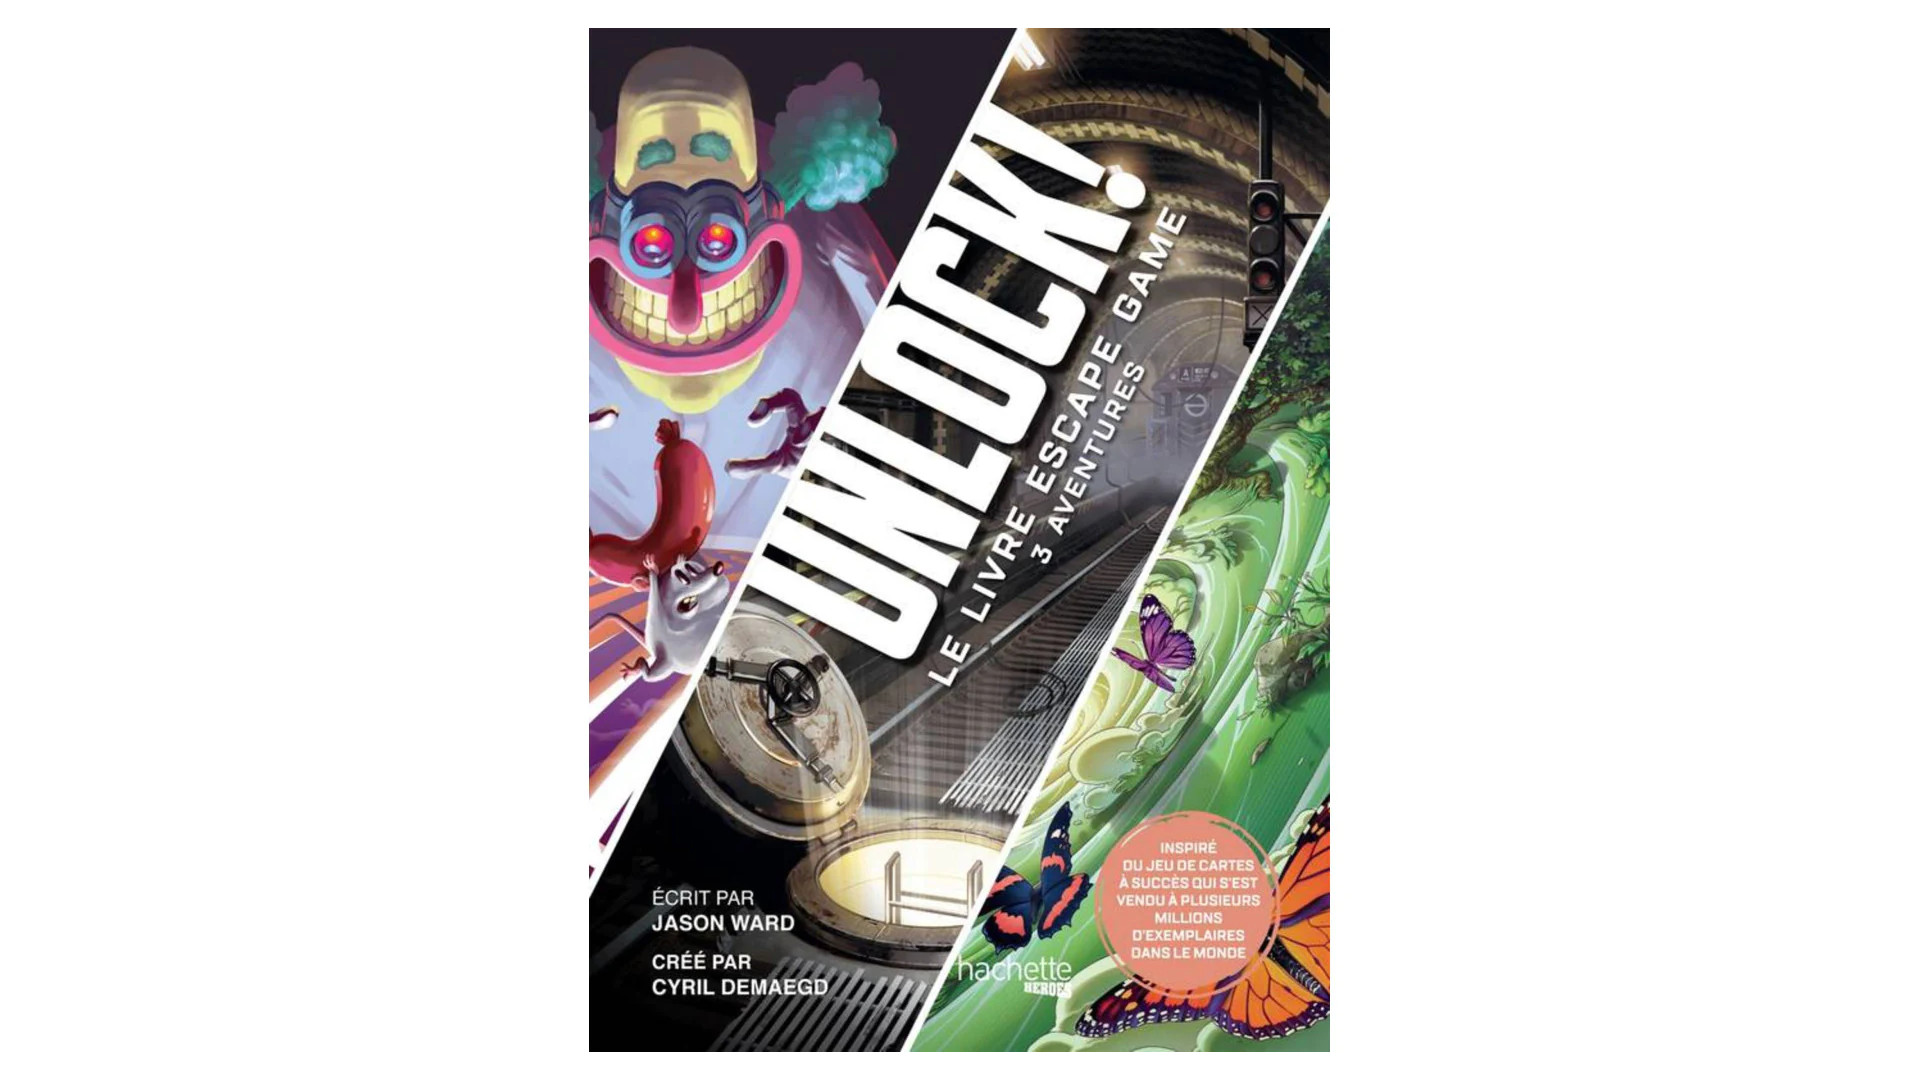 Acheter Escape Book : Unlock ! Le Livre Escape Game - 3 Aventures